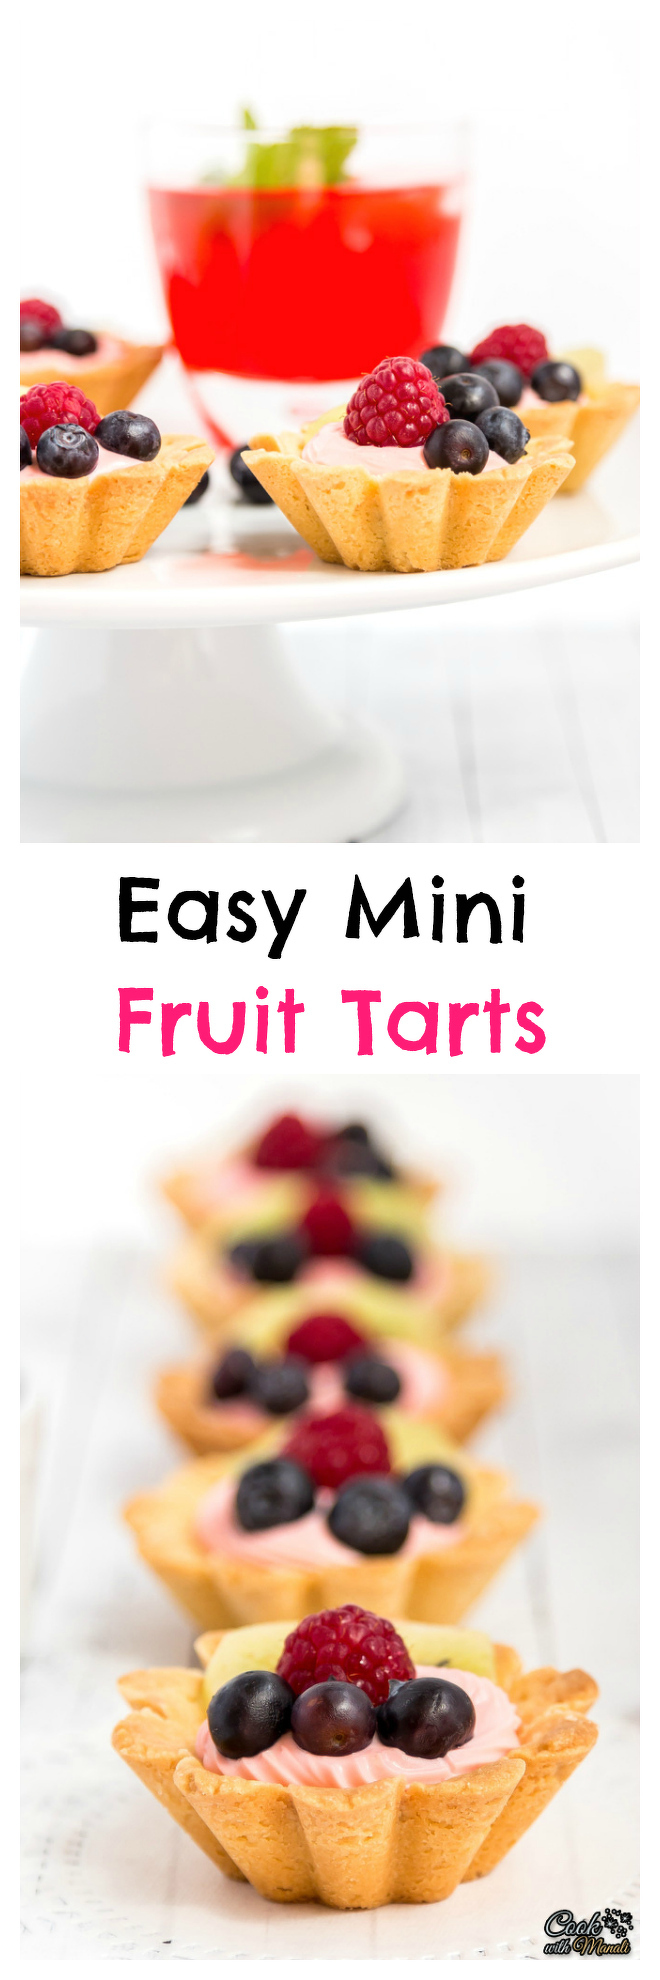 Mini Fruit Tarts Collage-nocwm